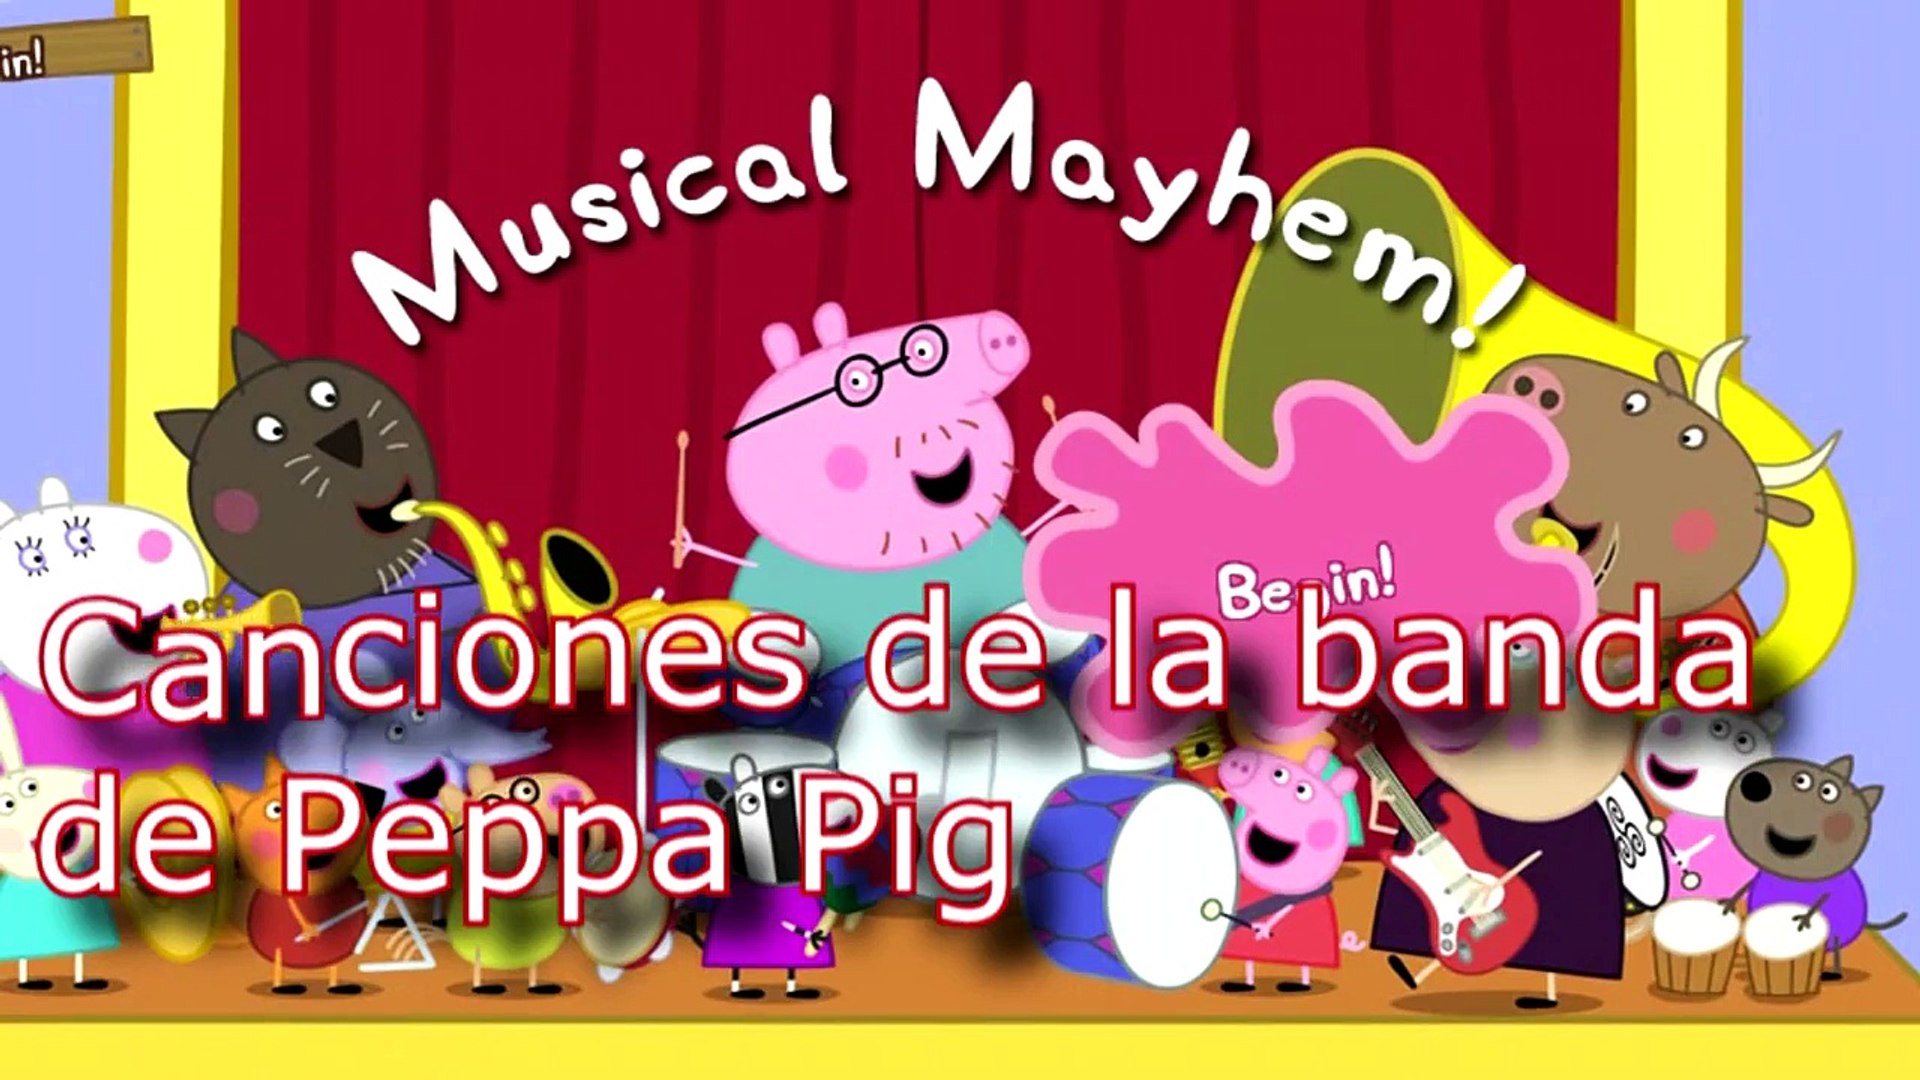 Canciones de la banda de Peppa pig 4 - video Dailymotion